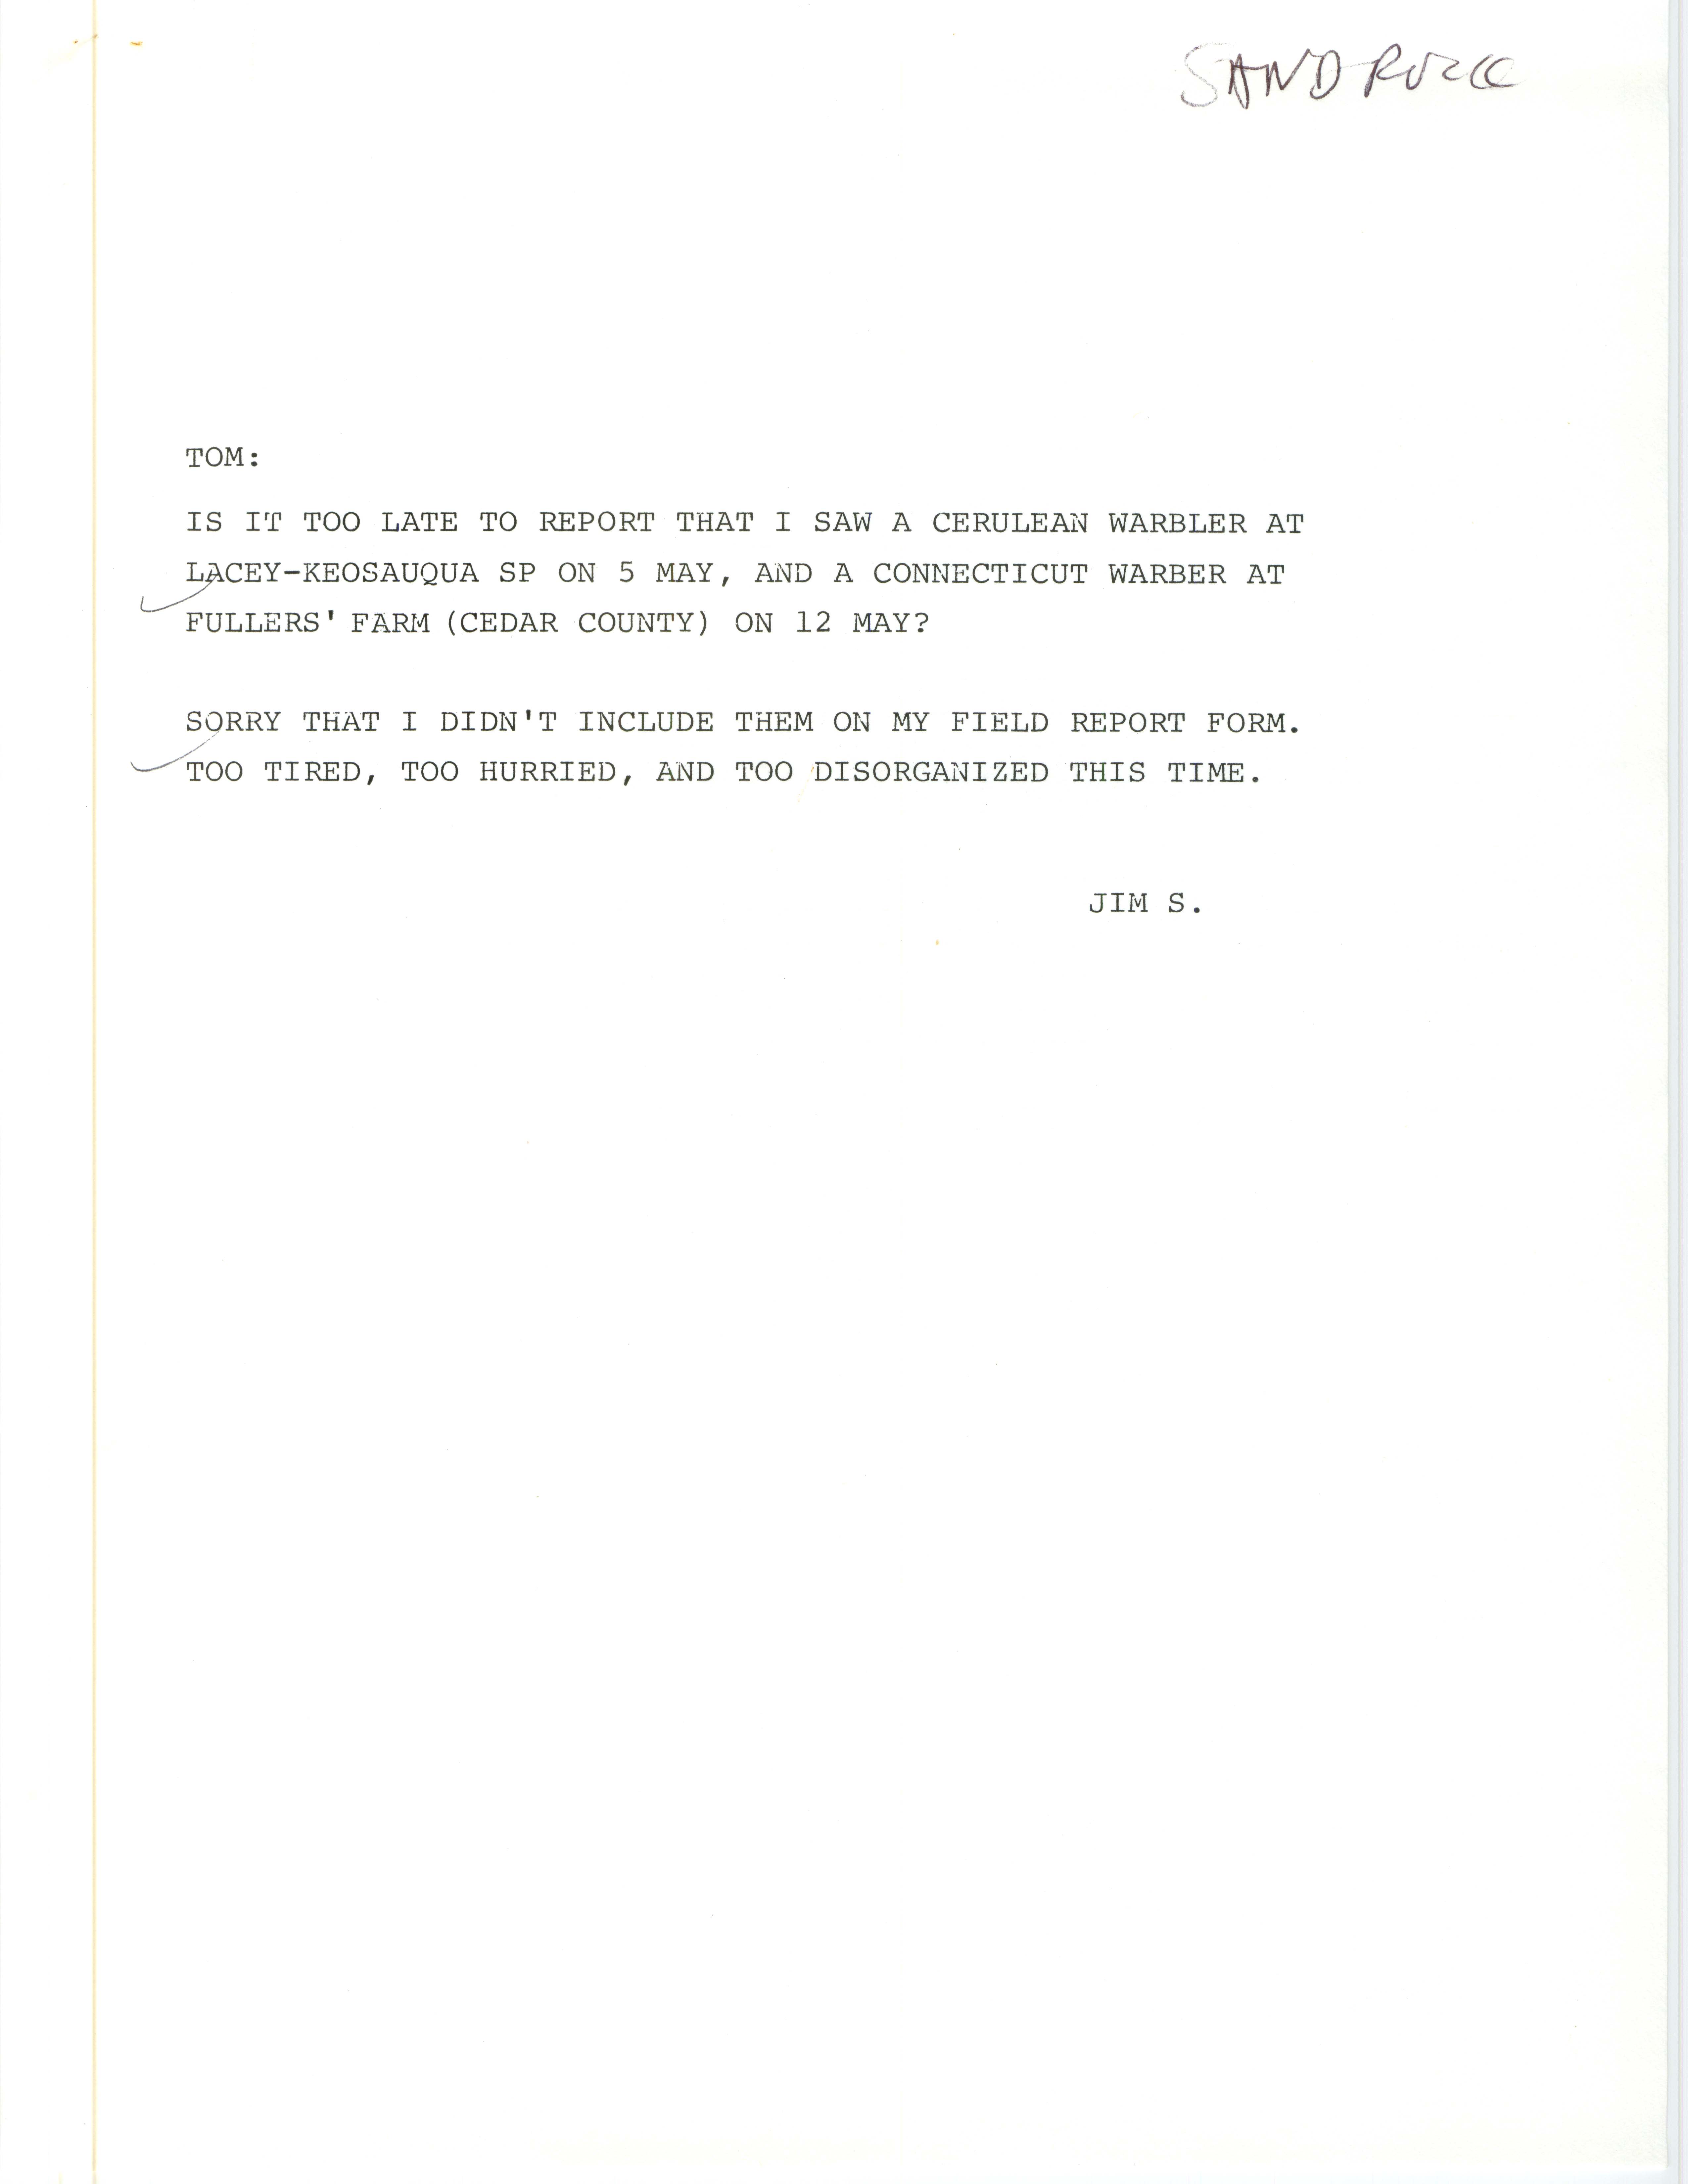 James P. Sandrock letter to Thomas H. Kent regarding warbler sightings, May 1984